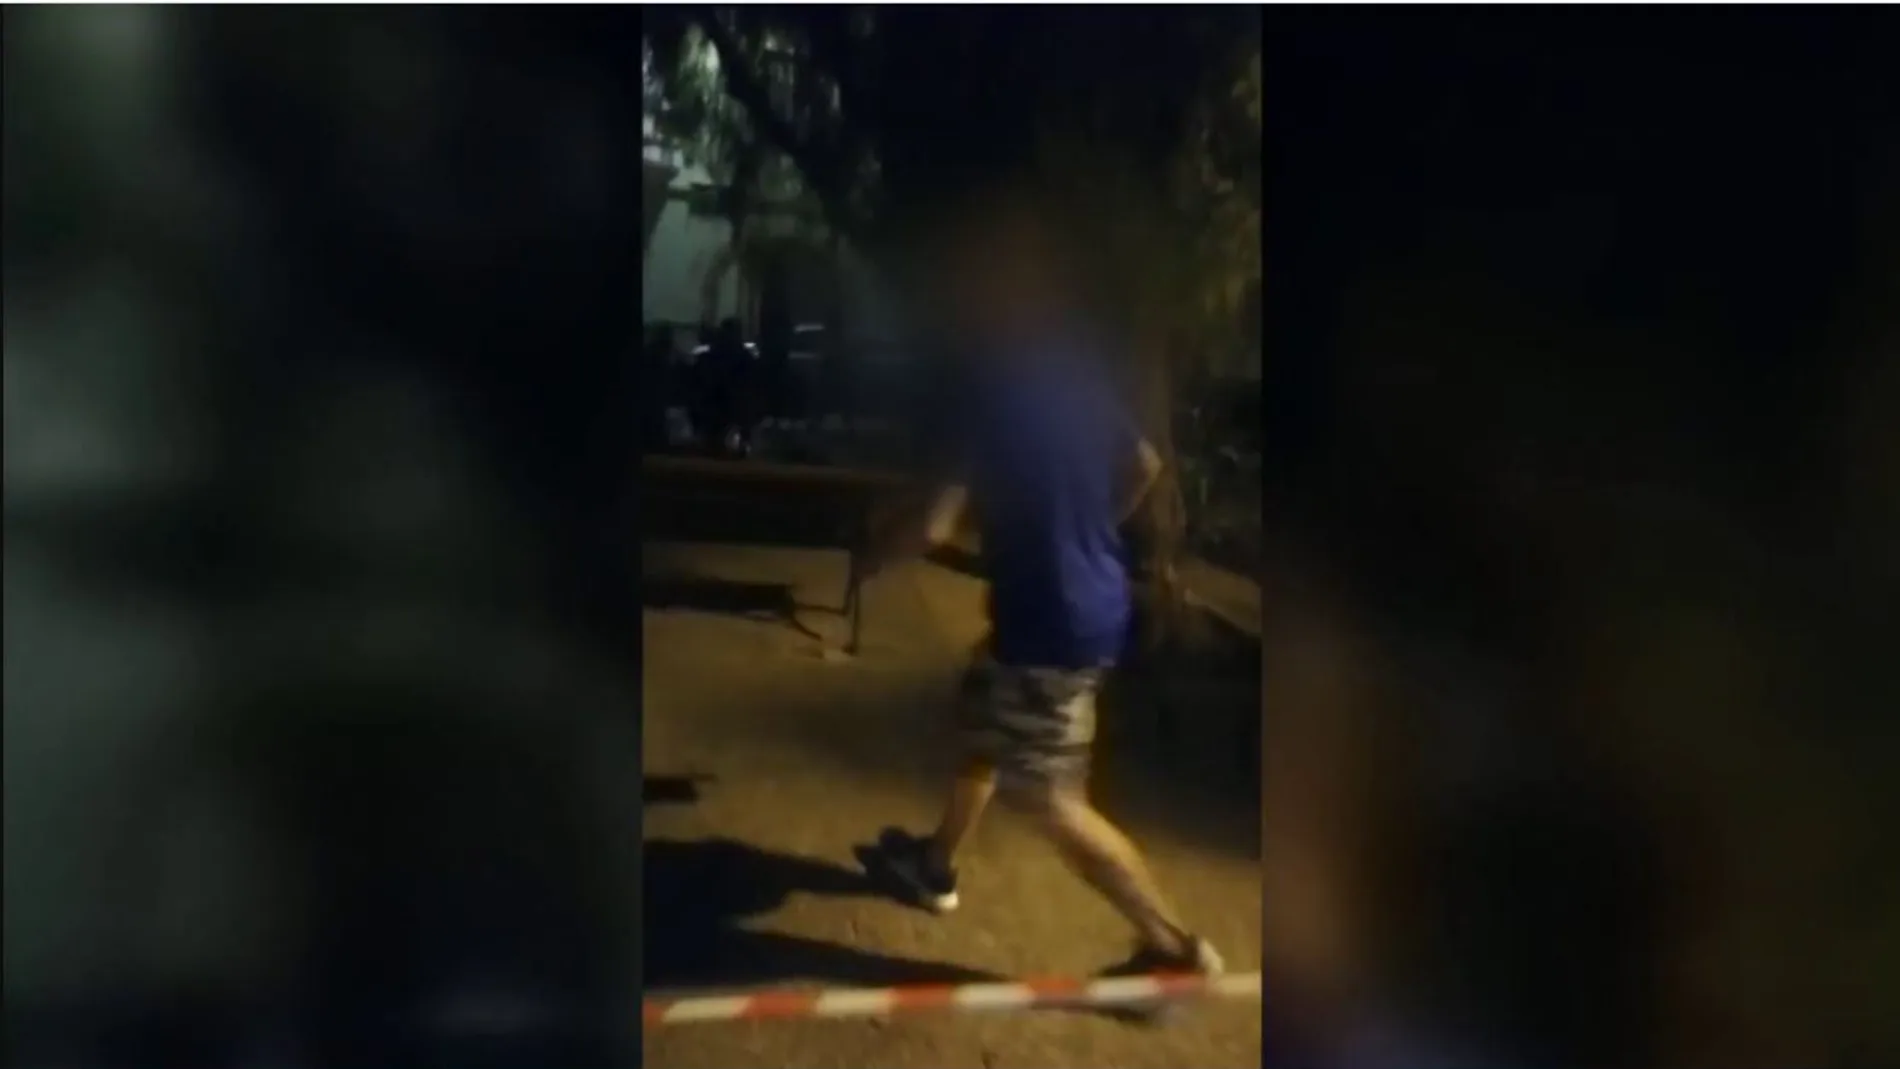 Un hombre siembra el pánico en Castellón al sacar una pistola y huir usando un niño como escudo humano